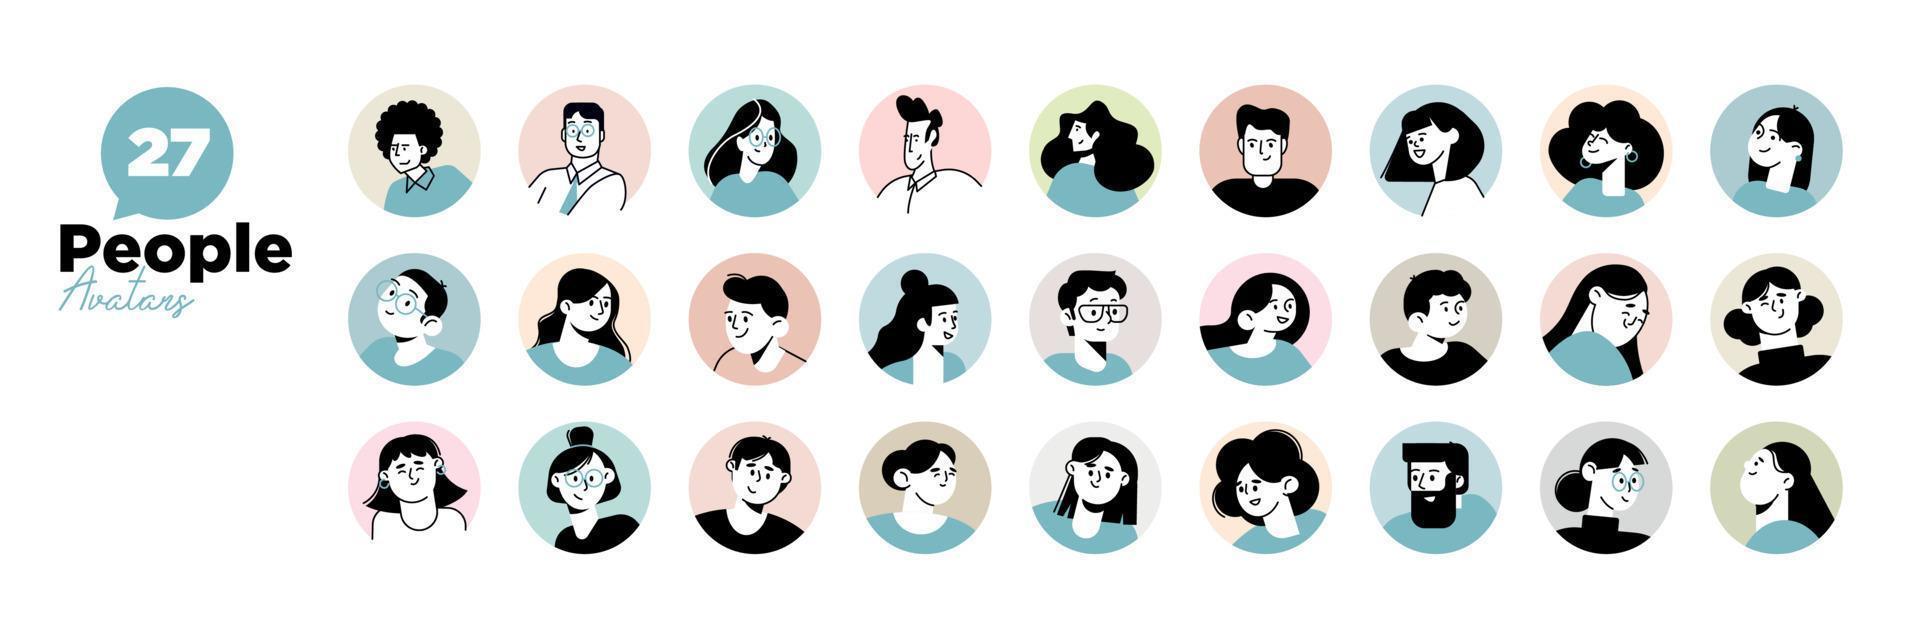 icônes d'avatar de personnes. personnages d'illustration vectorielle pour les médias sociaux et les réseaux, le profil d'utilisateur, la conception et le développement de sites Web et d'applications. vecteur